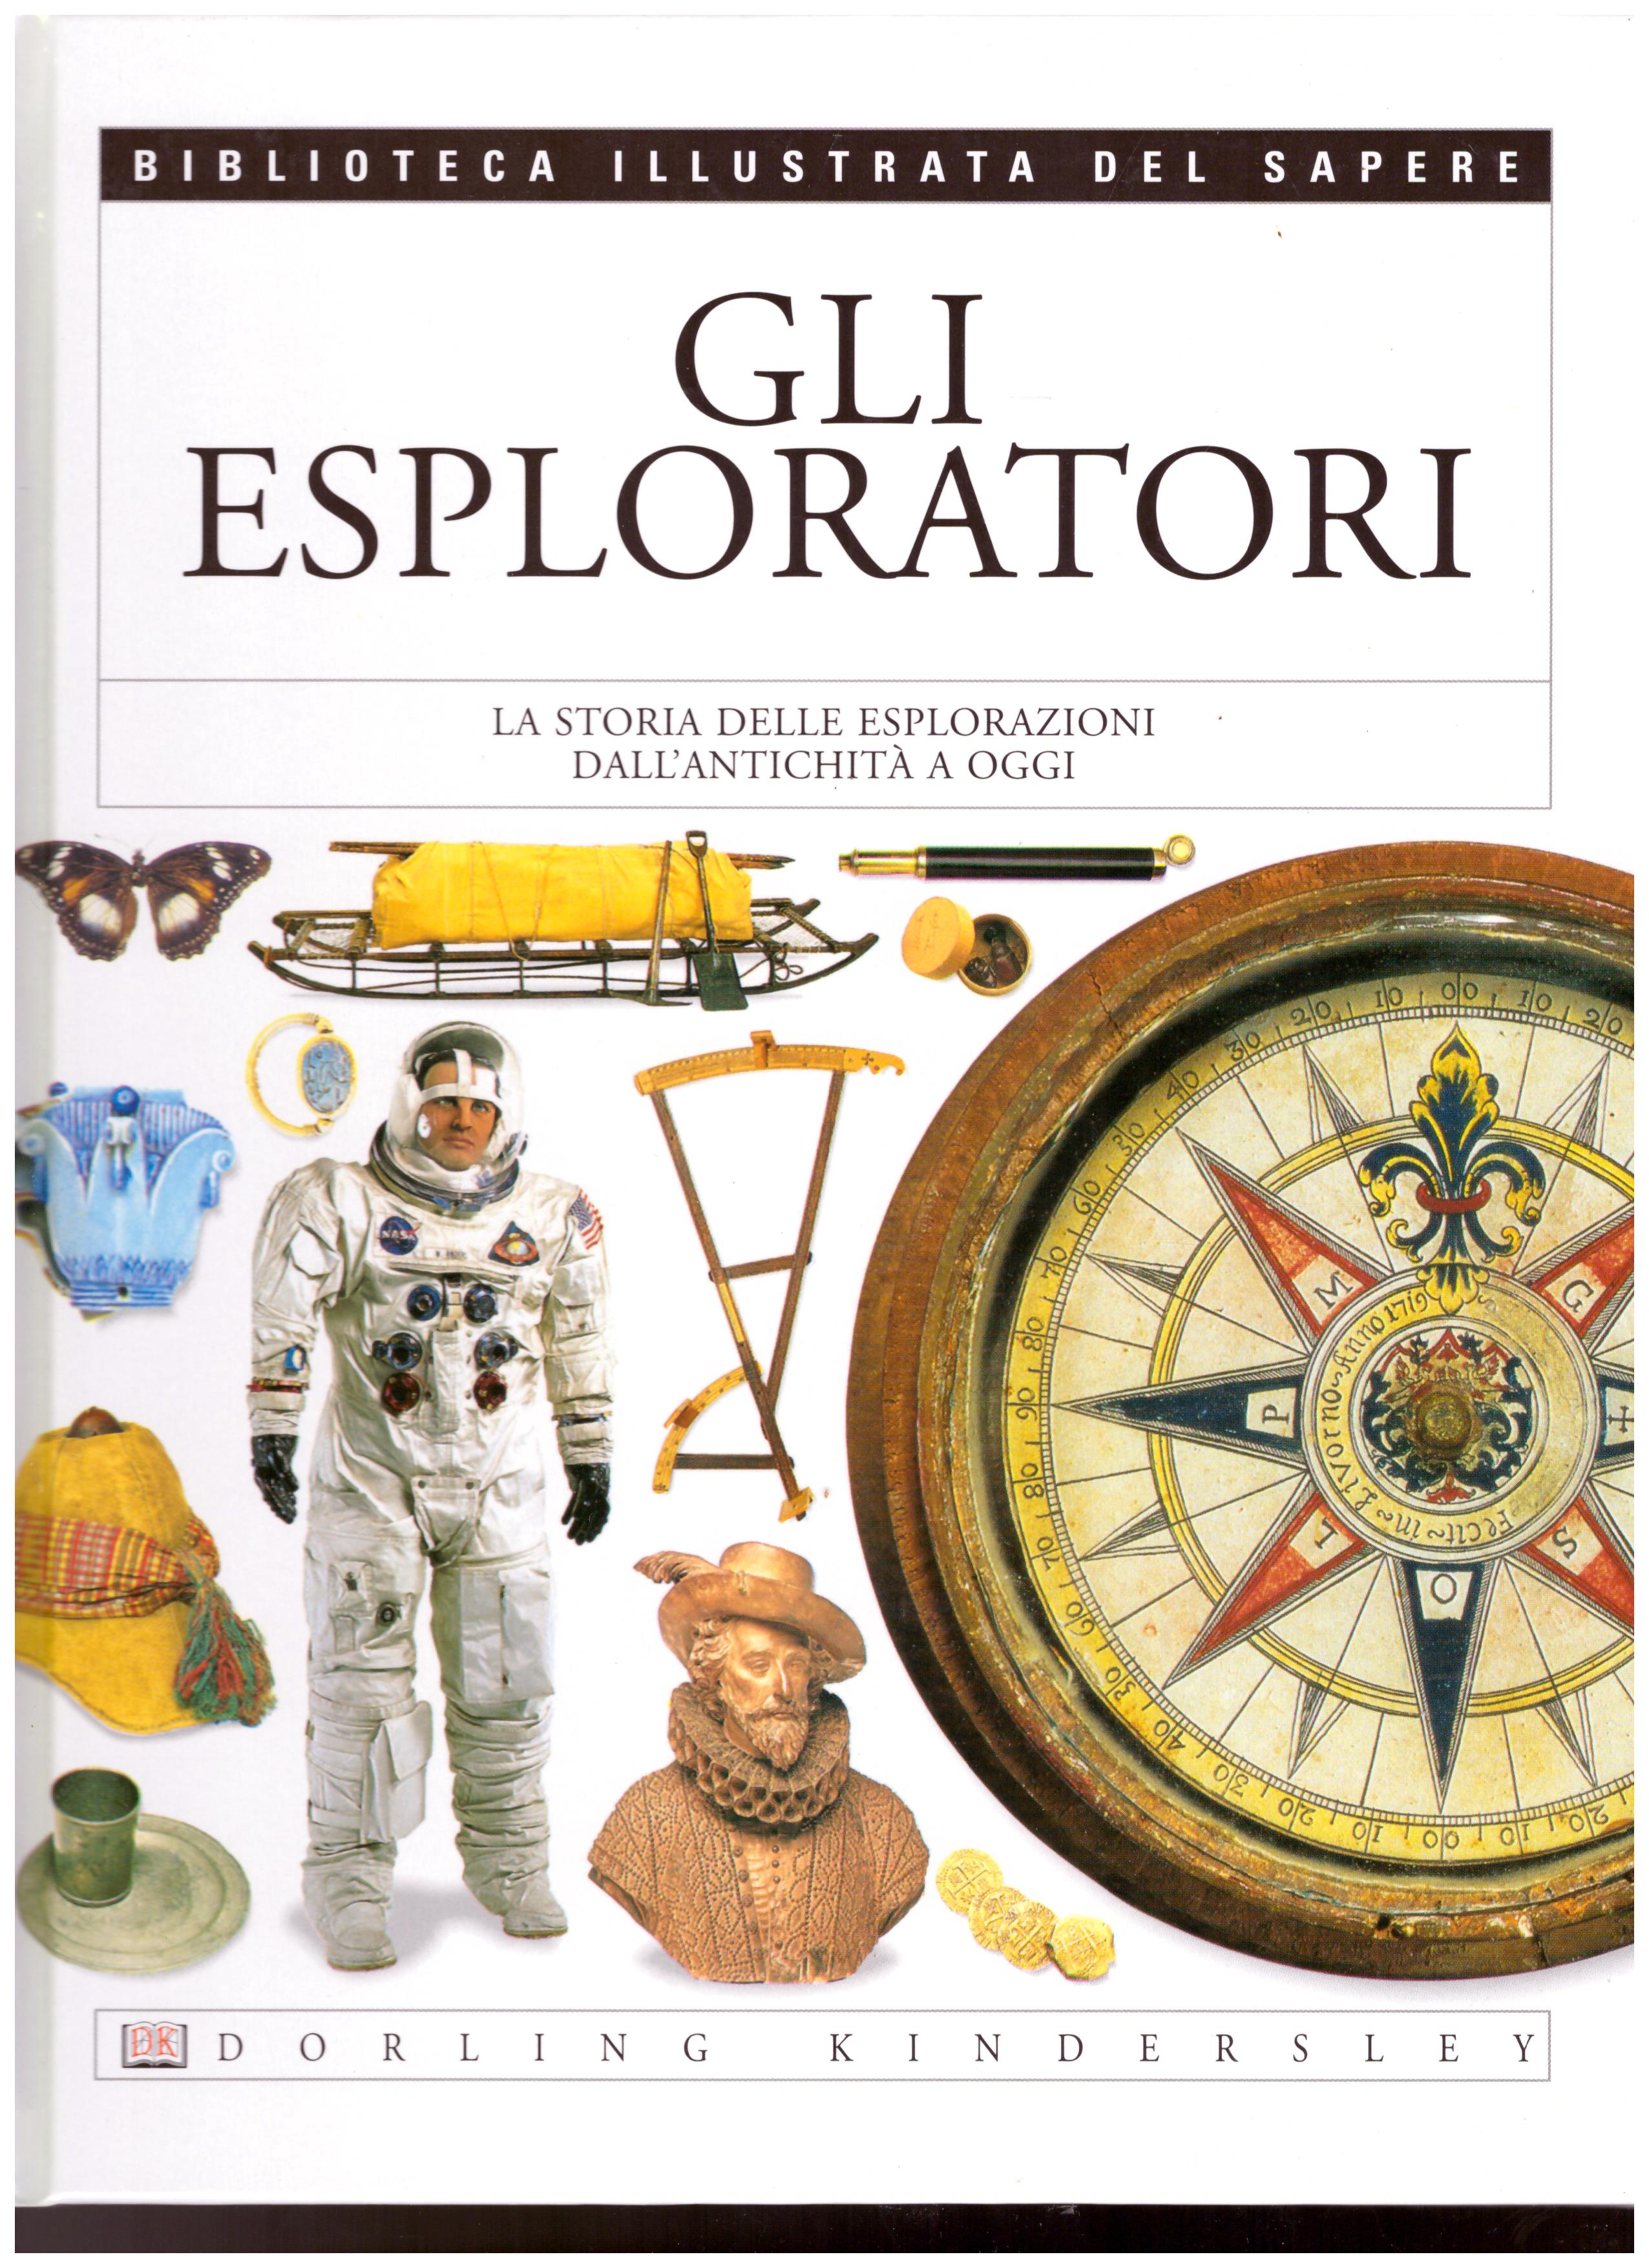 Titolo: Gli esploratori N.17      Autore: AA.VV.      Editore: Dorling Kindersley, 2004